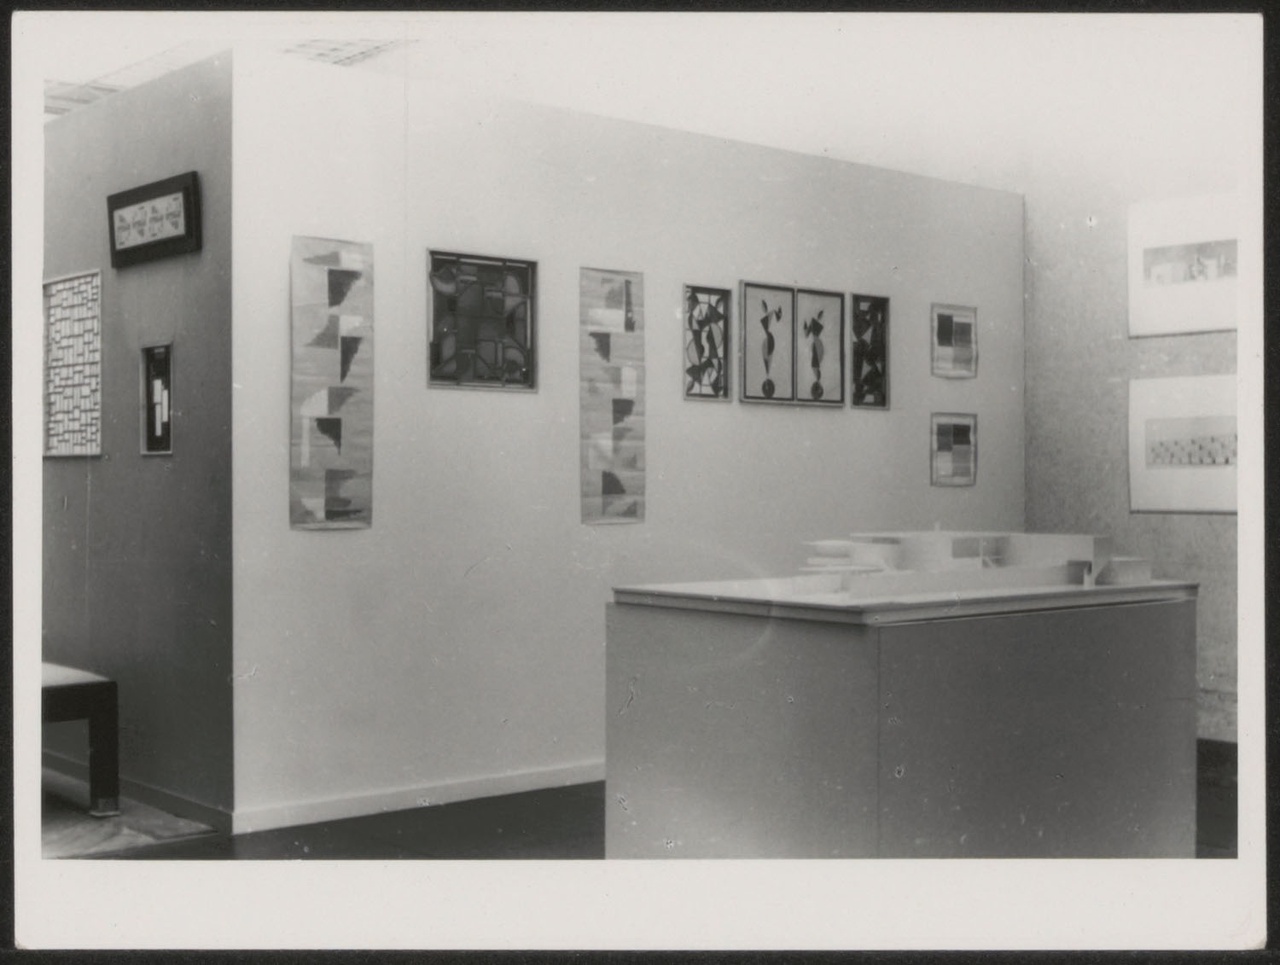 Afbeelding van tentoonstelling De Stijl SMA, 1951, zaal 1, wand stapelfiguren met witte maquette